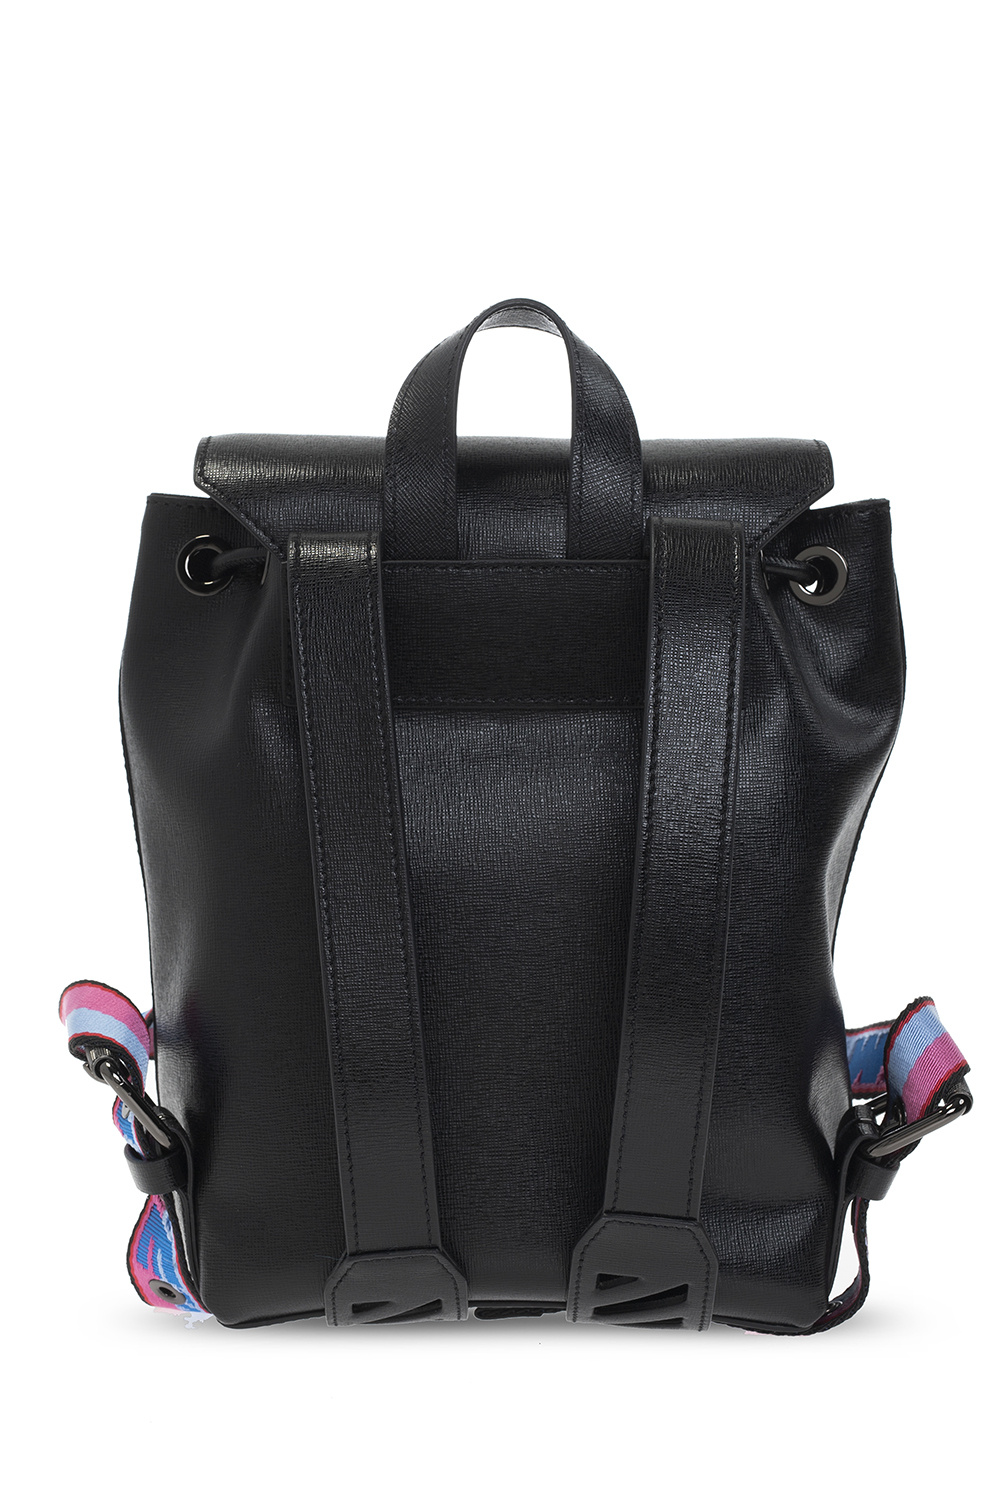 Túi xách nữ hàng hiệu đẹp  Bags, Leather handbags women, Bling handbag